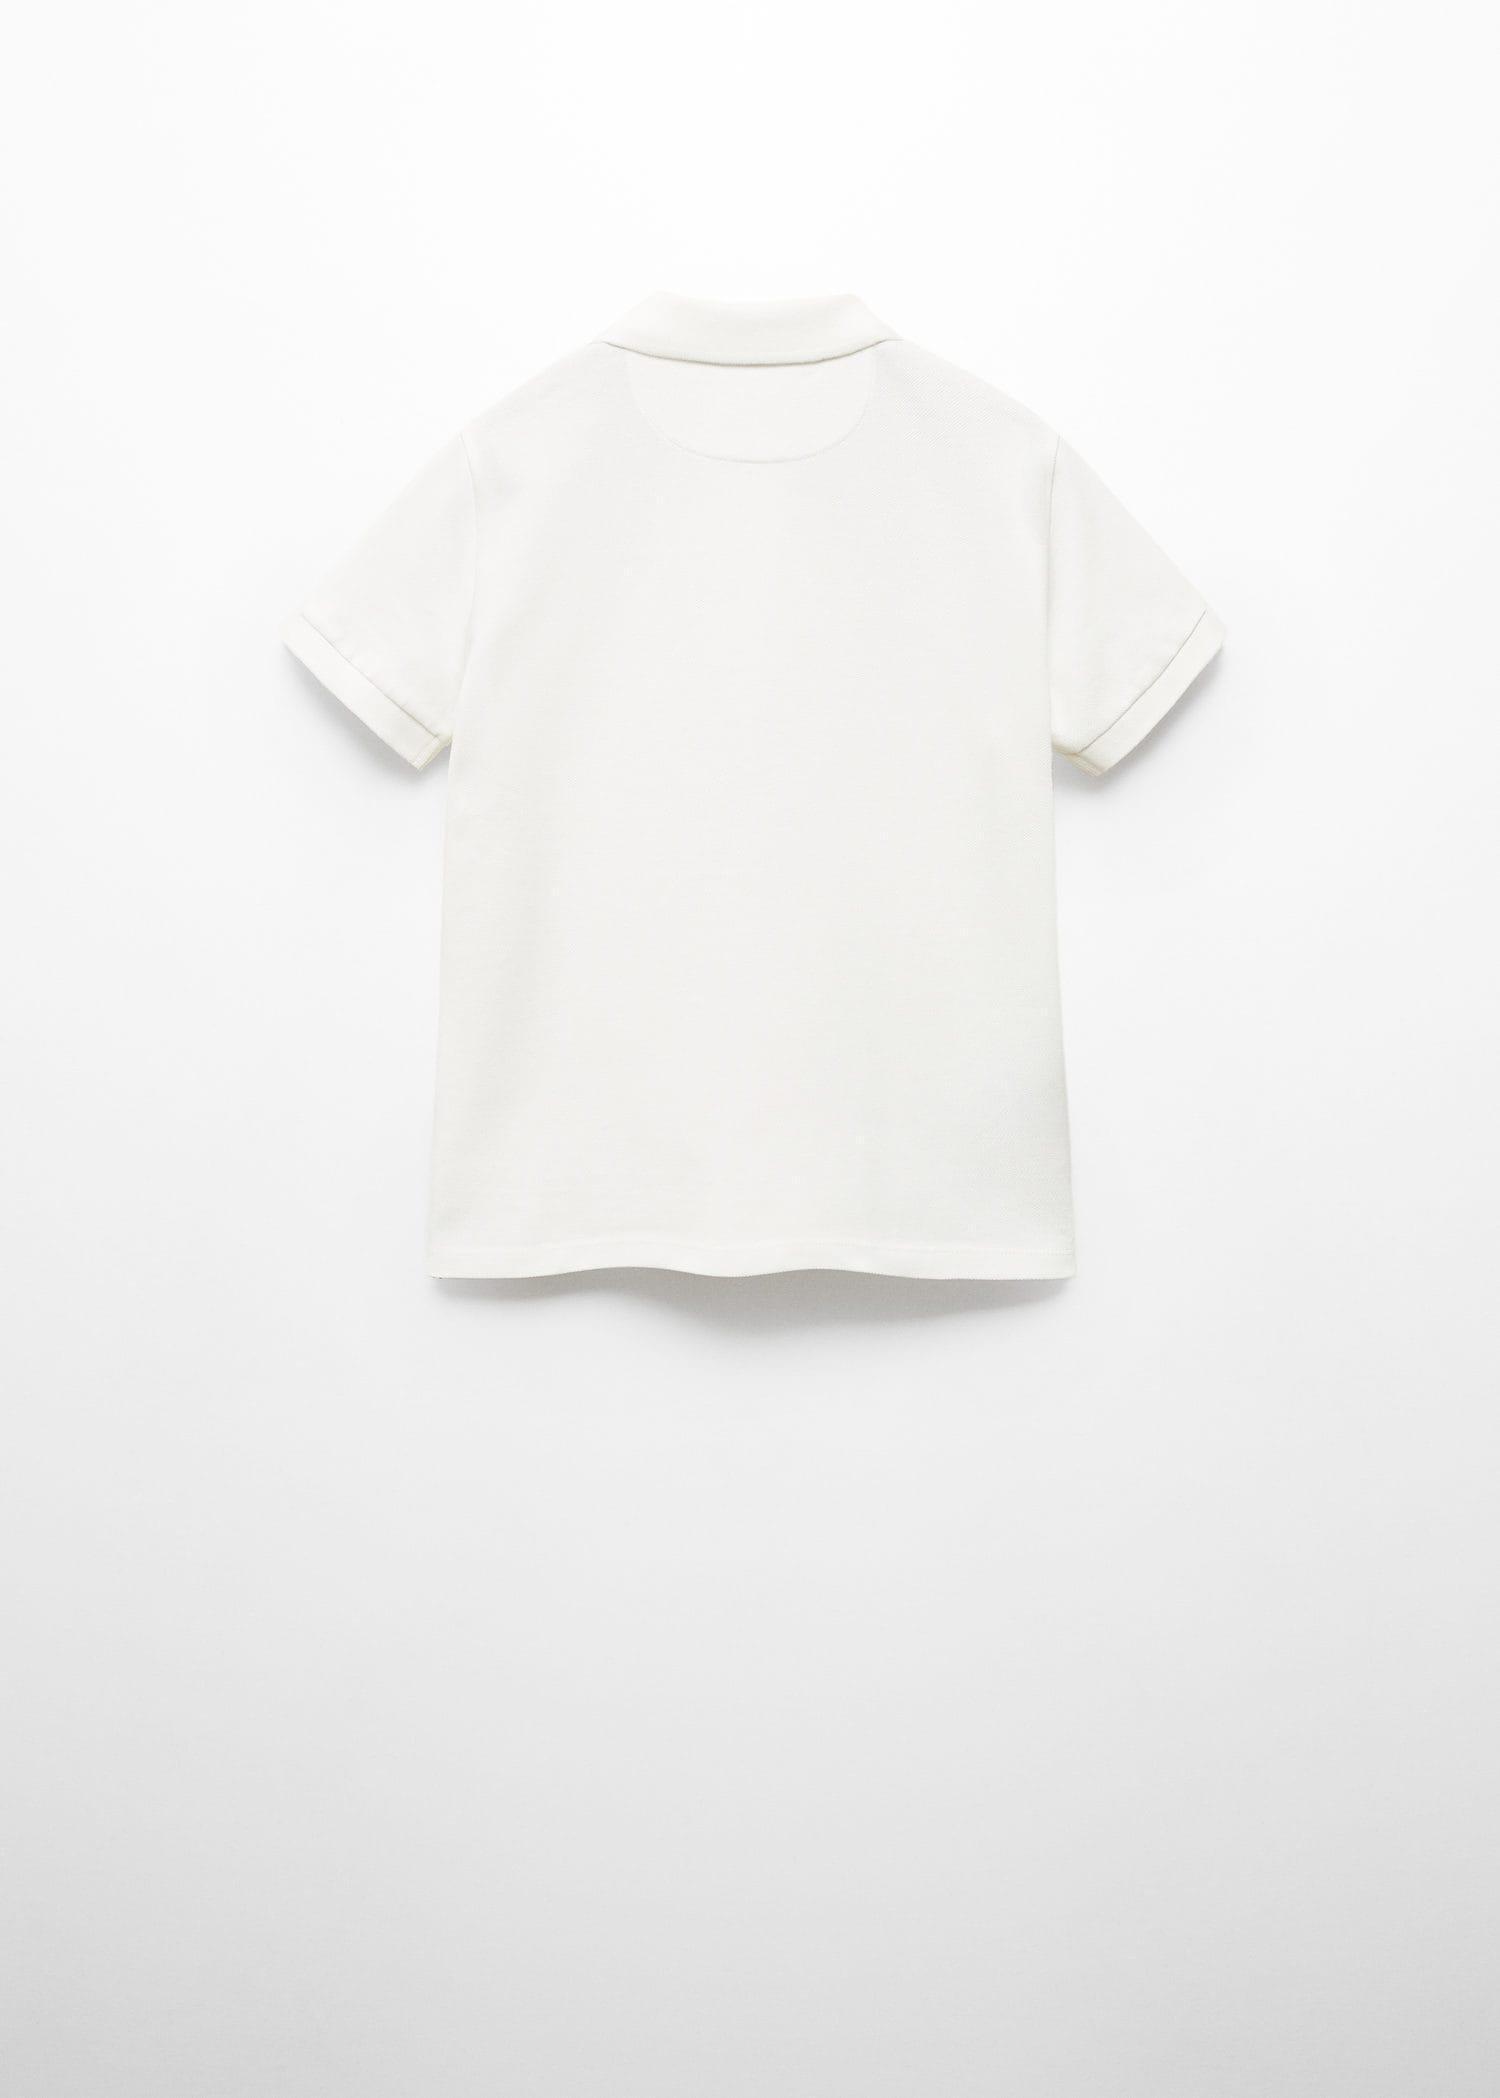 Mango - White Cotton Polo Shirt, Kids Boys